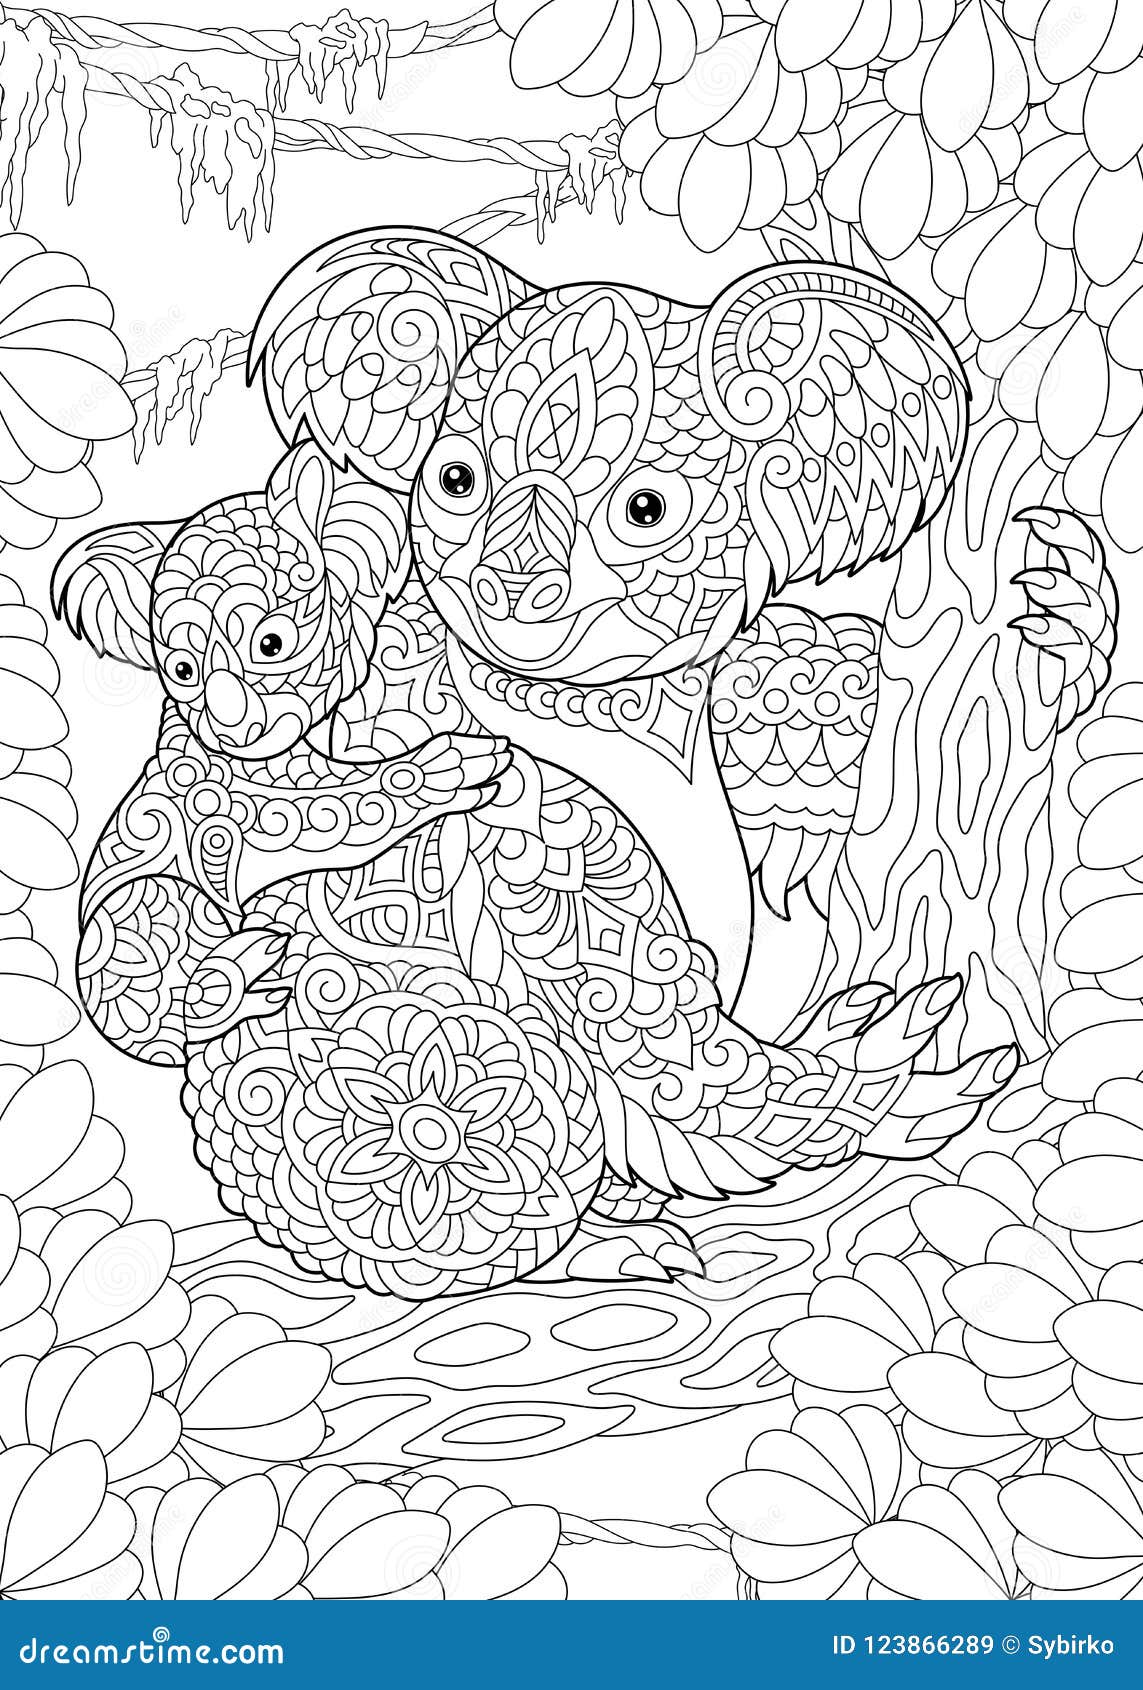 Zentangle Koala Stock Illustrations – 20 Zentangle Koala Stock ...